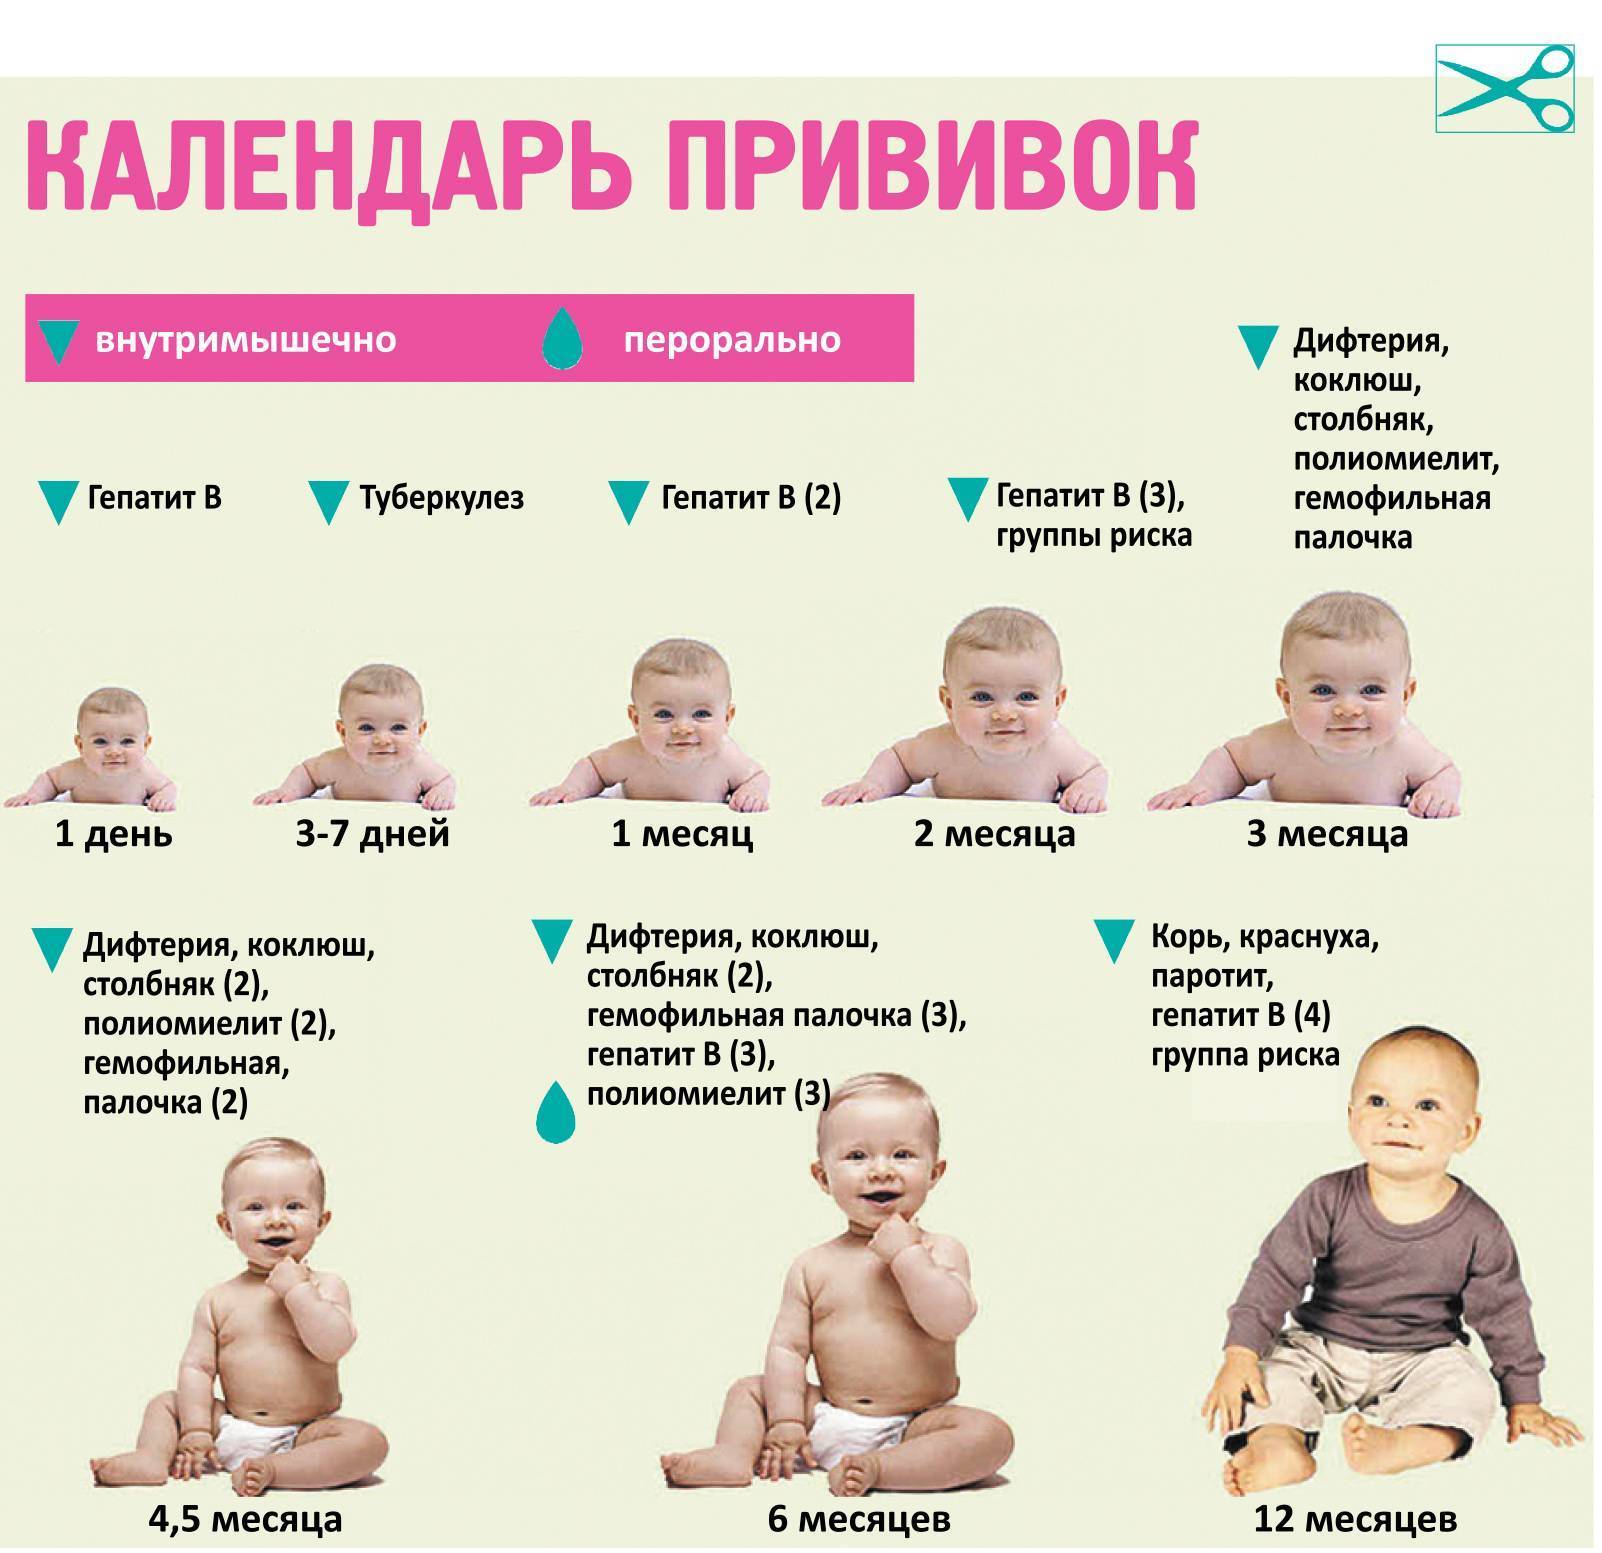 Календарь прививок детям до 1 года (в россии) – график